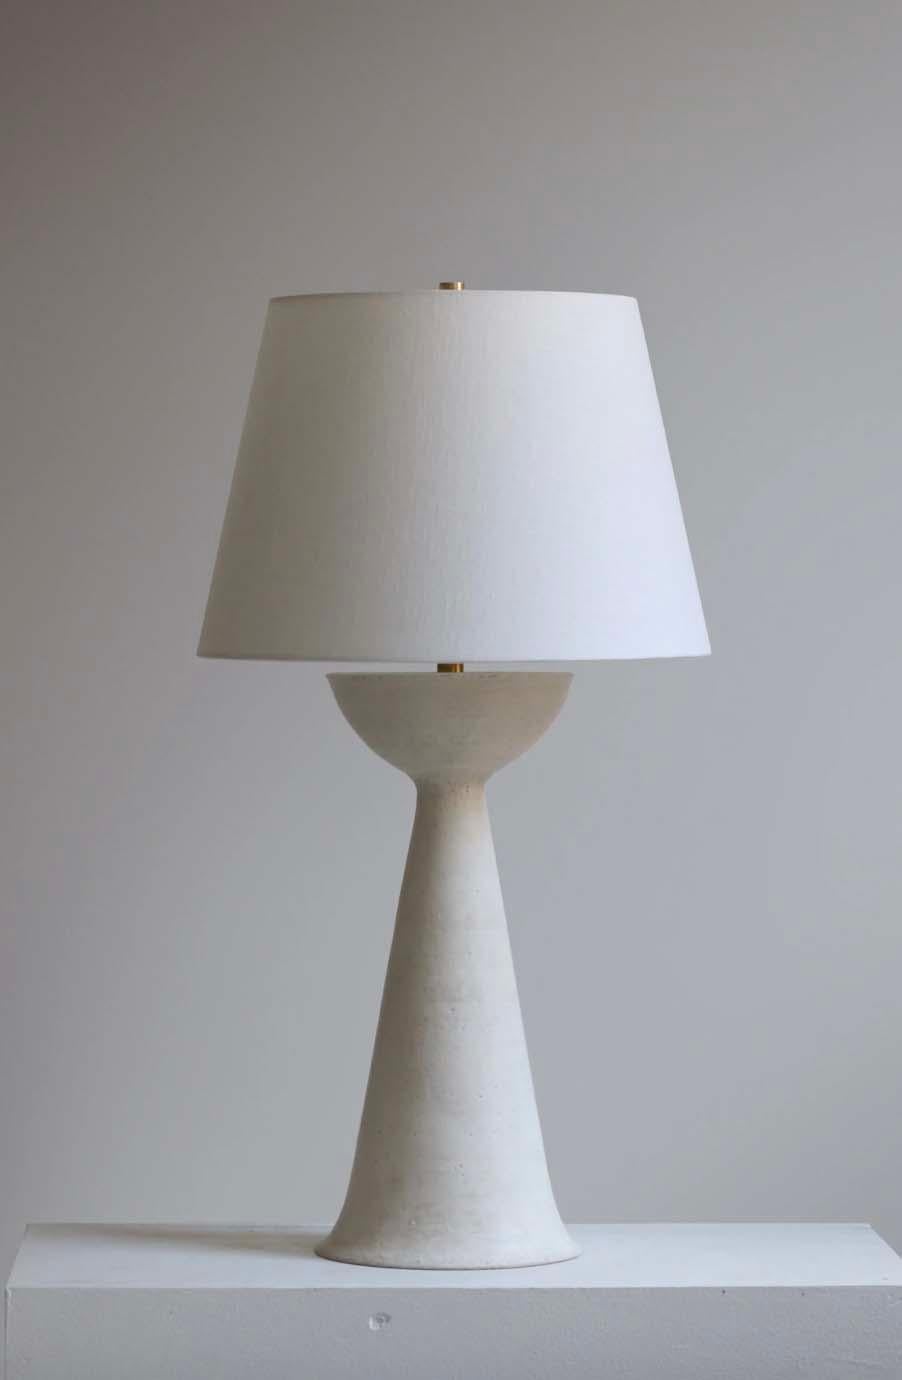 La lámpara Séneca es cerámica de estudio hecha a mano por el artista ceramista Danny Kaplan. Pantalla incluida. Ten en cuenta que las dimensiones exactas pueden variar.

Nacido en Nueva York y criado en Aix-en-Provence (Francia), la pasión de